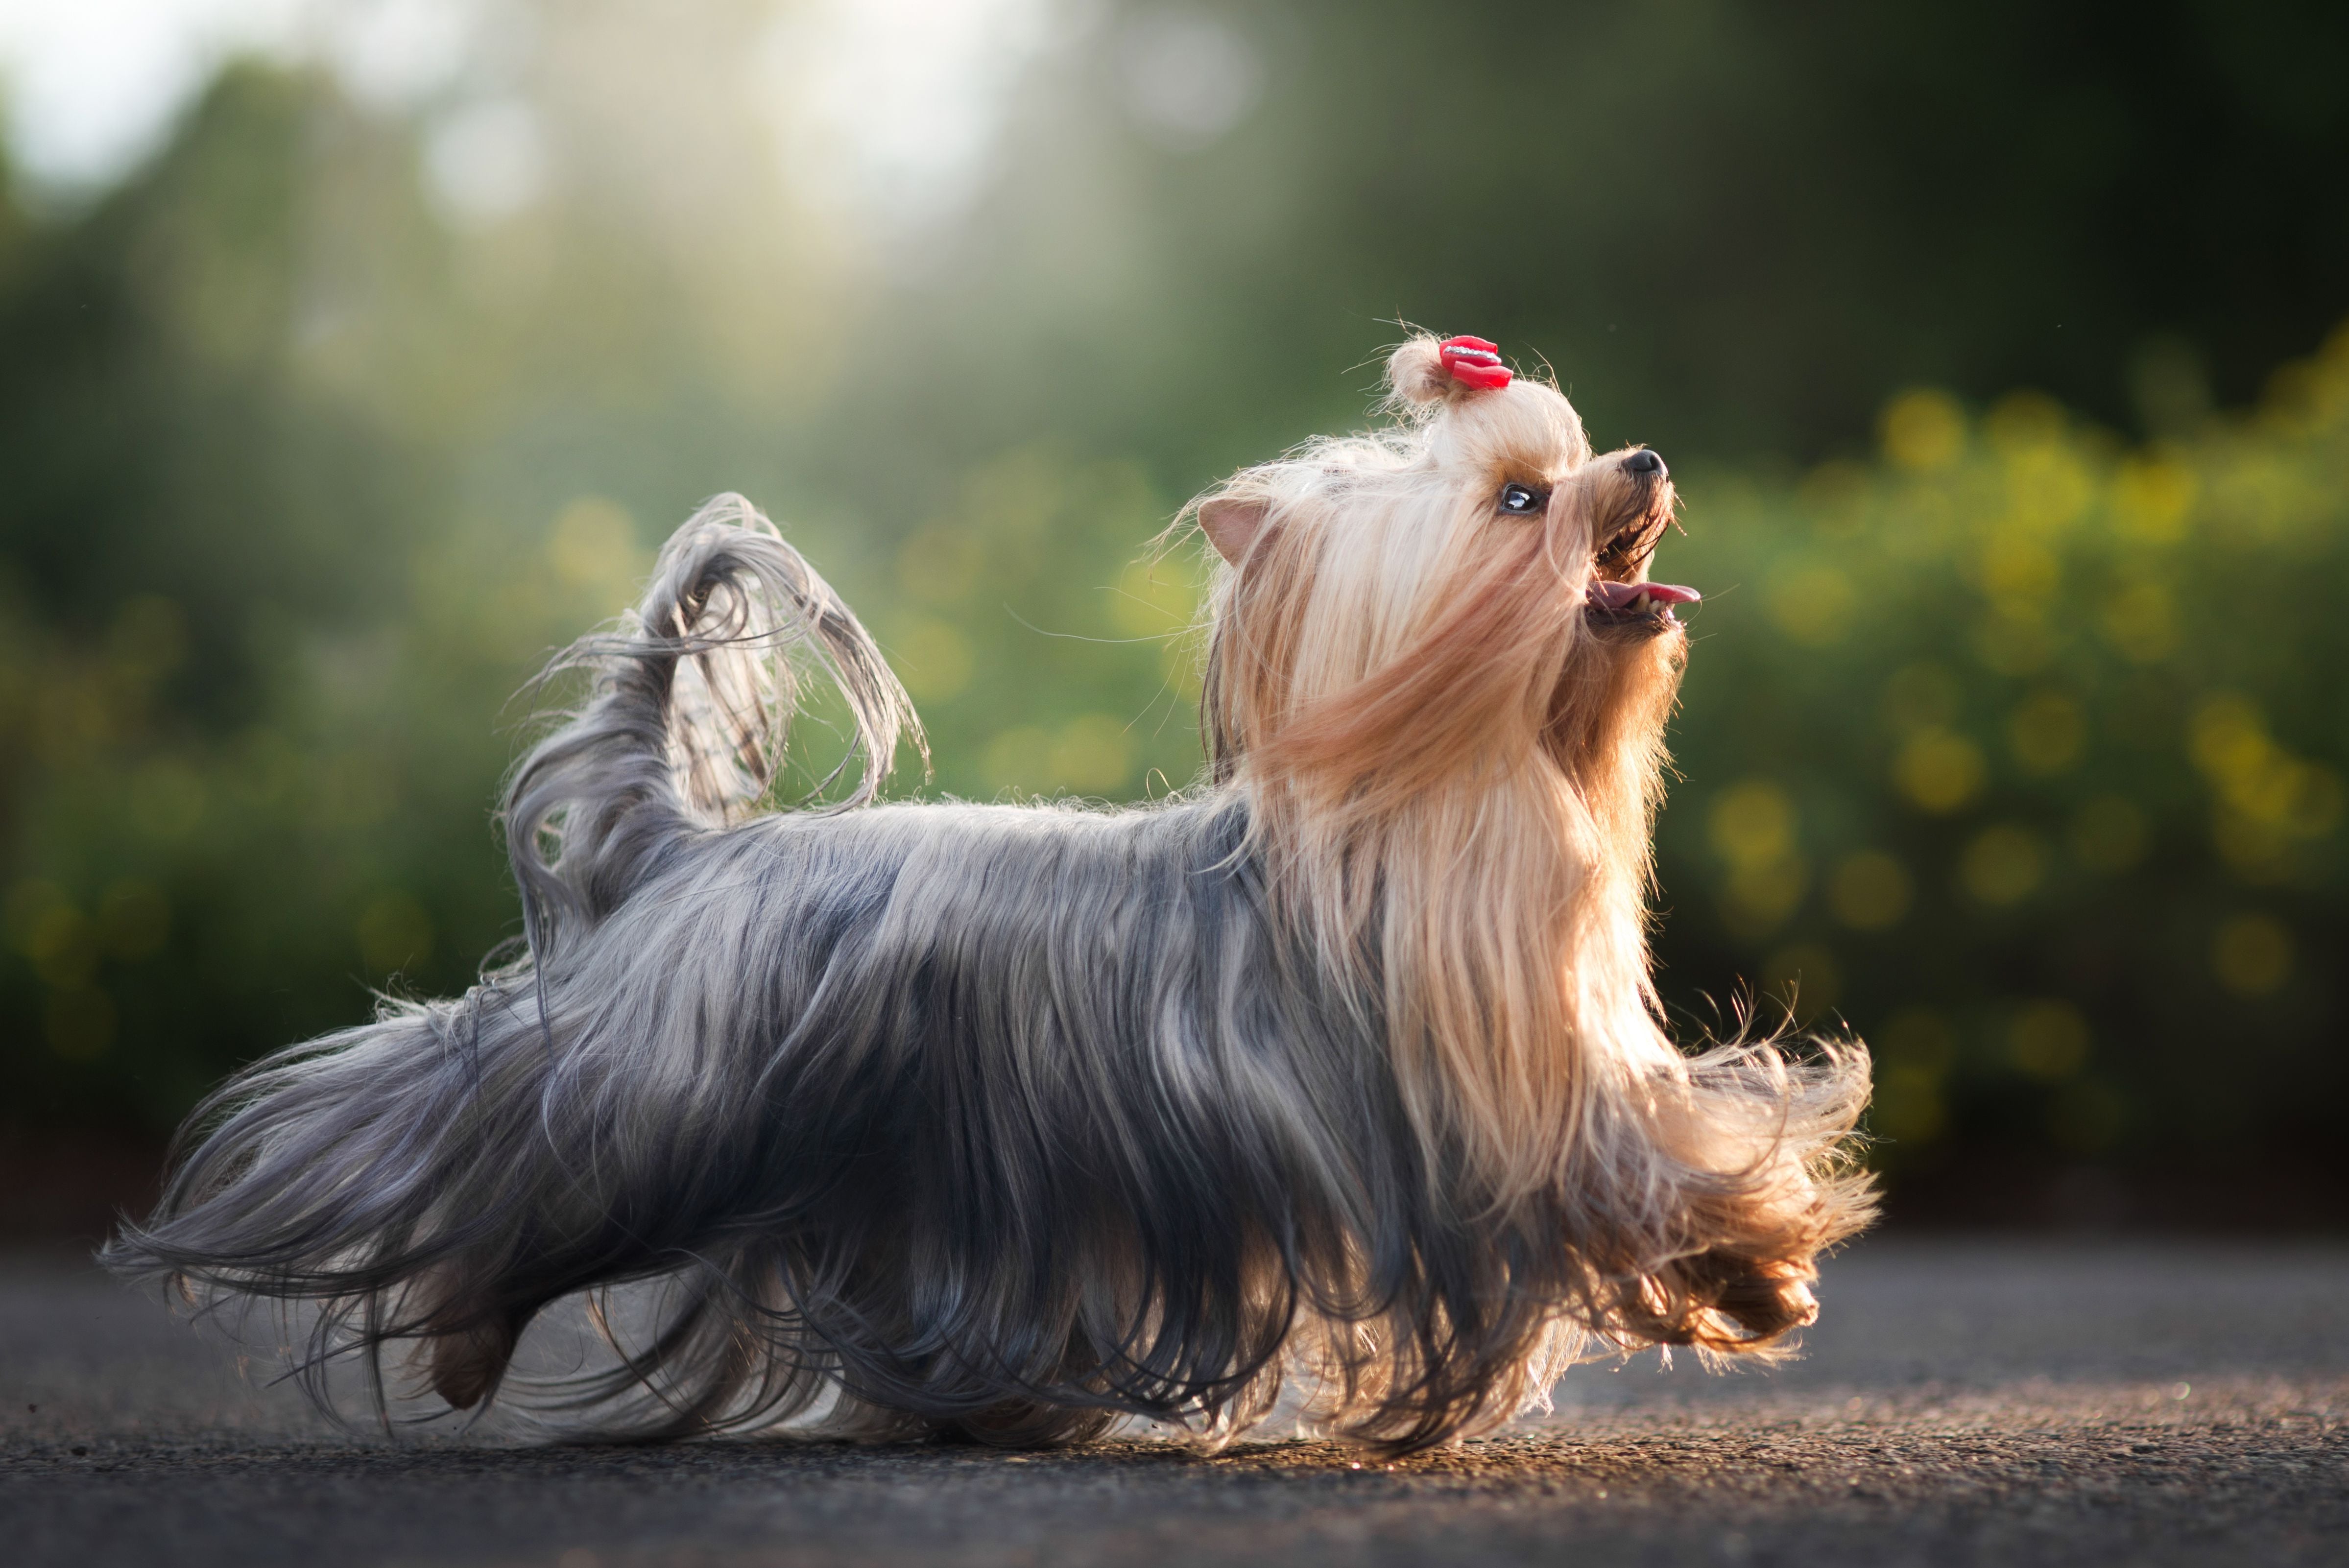 Perro de raza Yorkshire terrier caminando por una calle (Vía Getty Images)